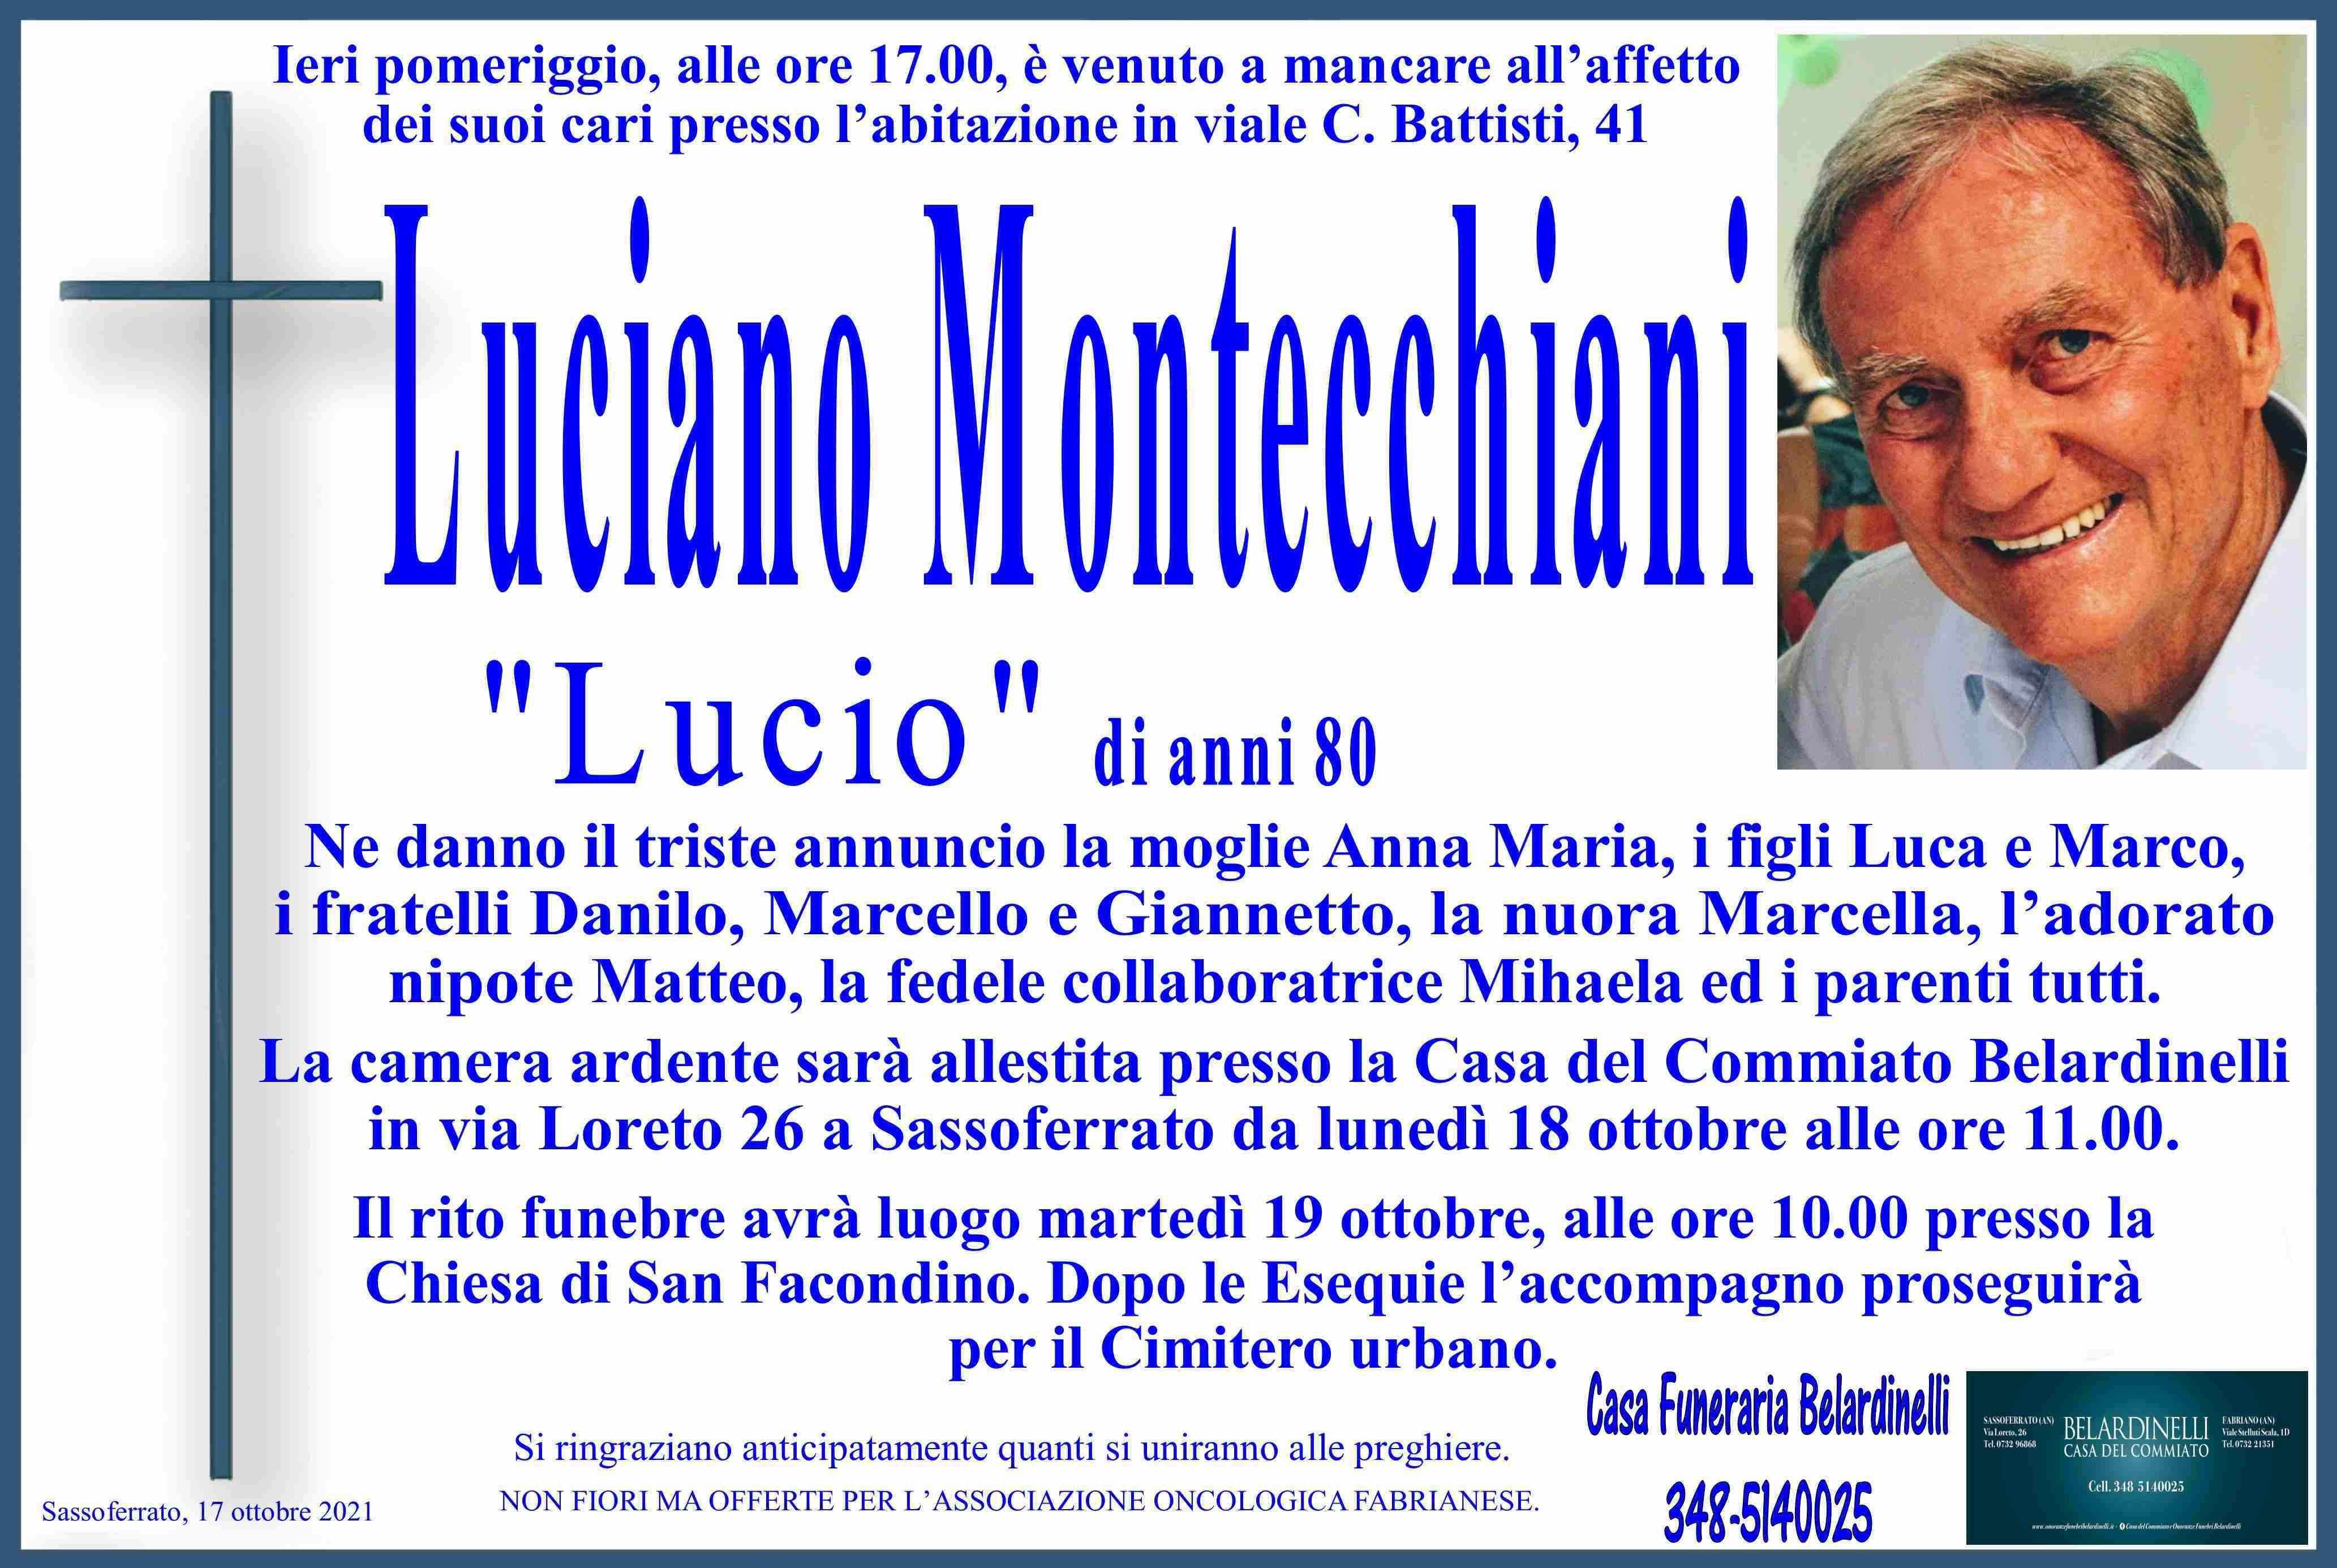 Luciano Montecchiani